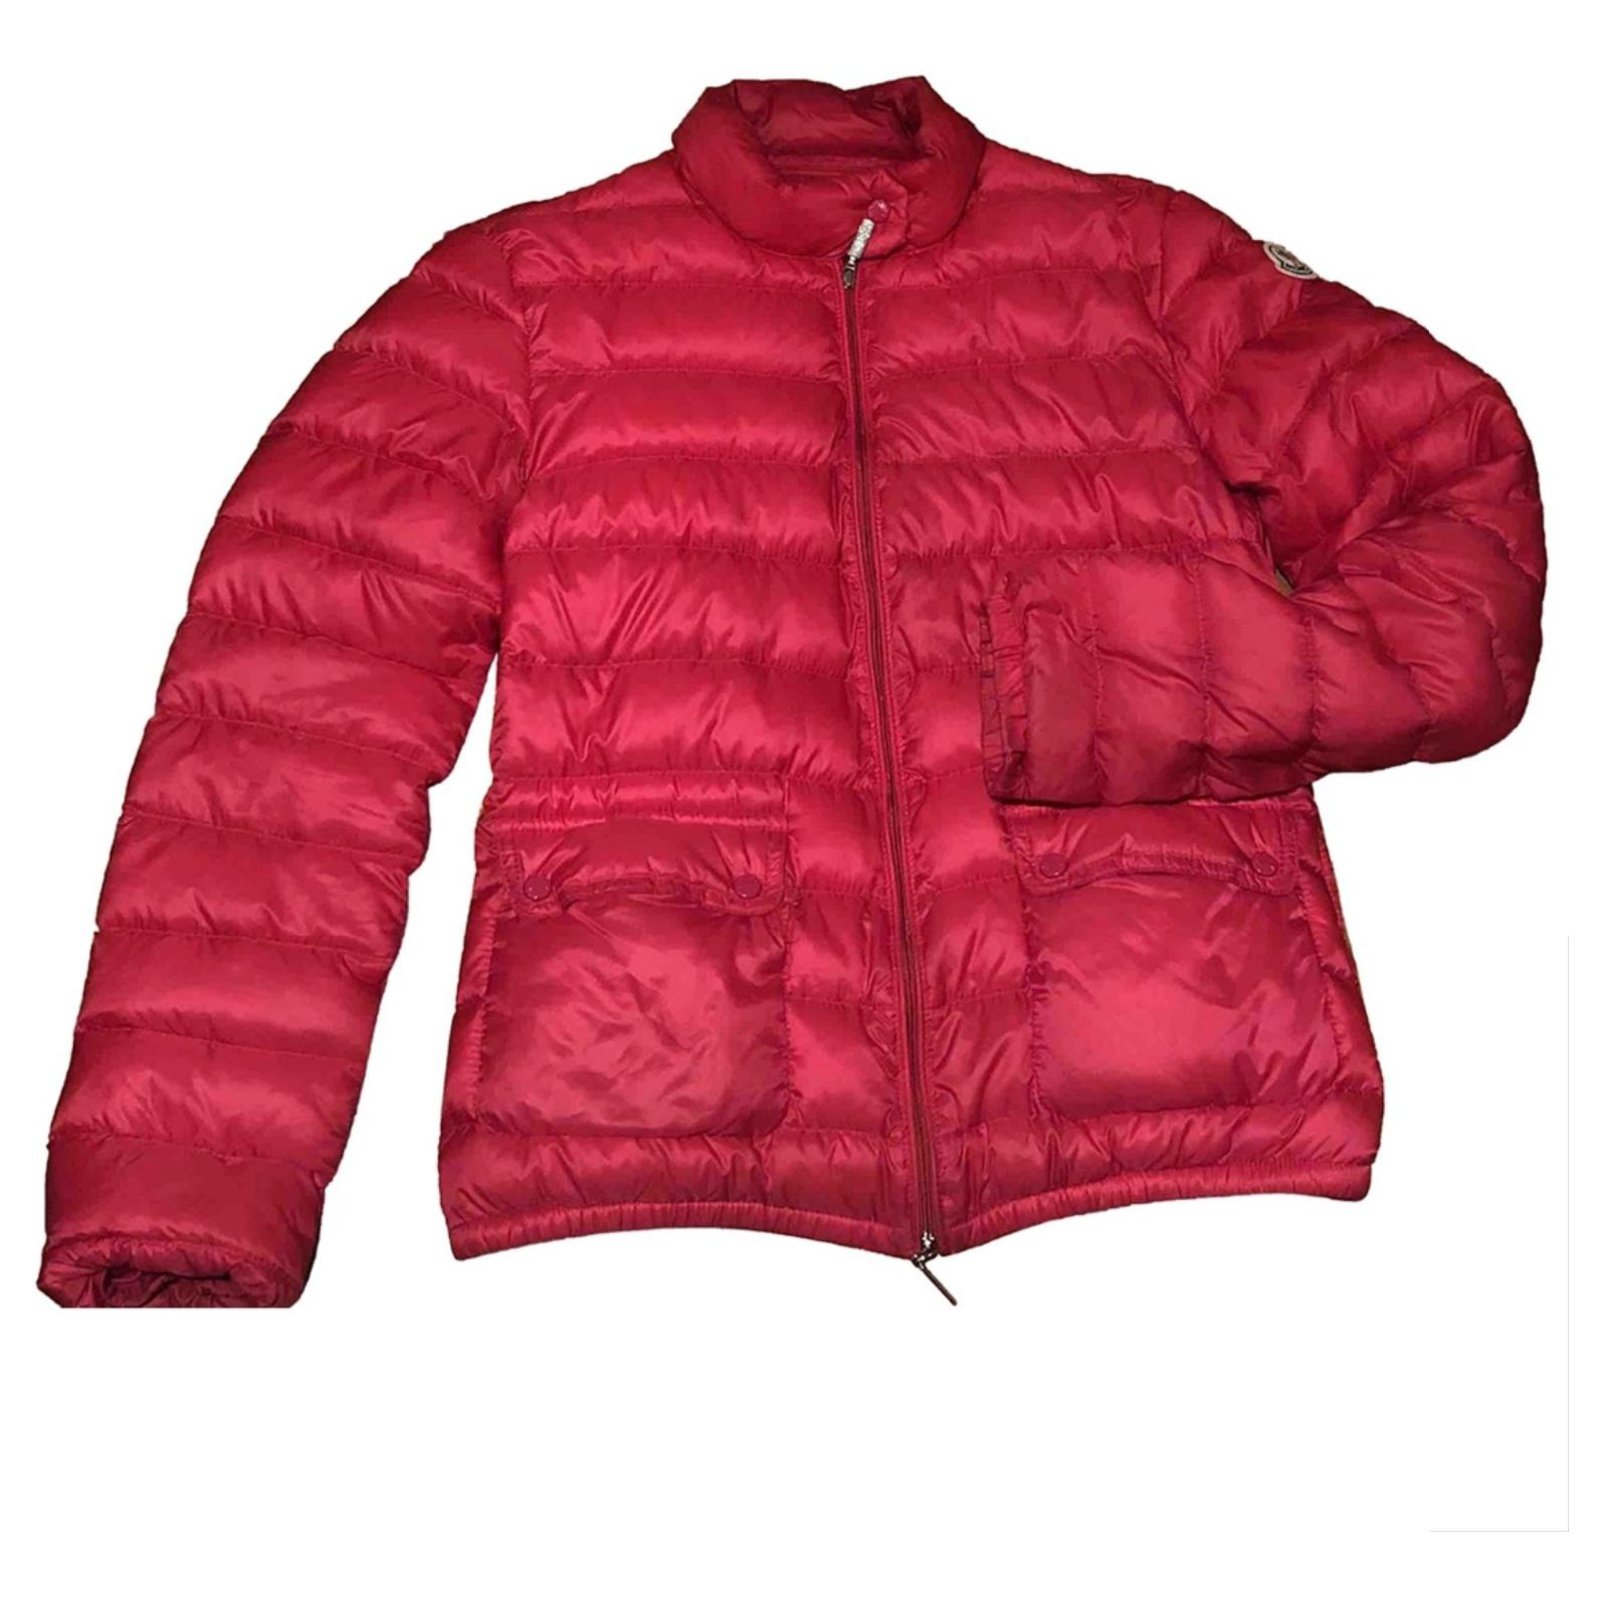 moncler lans polyamide jacket